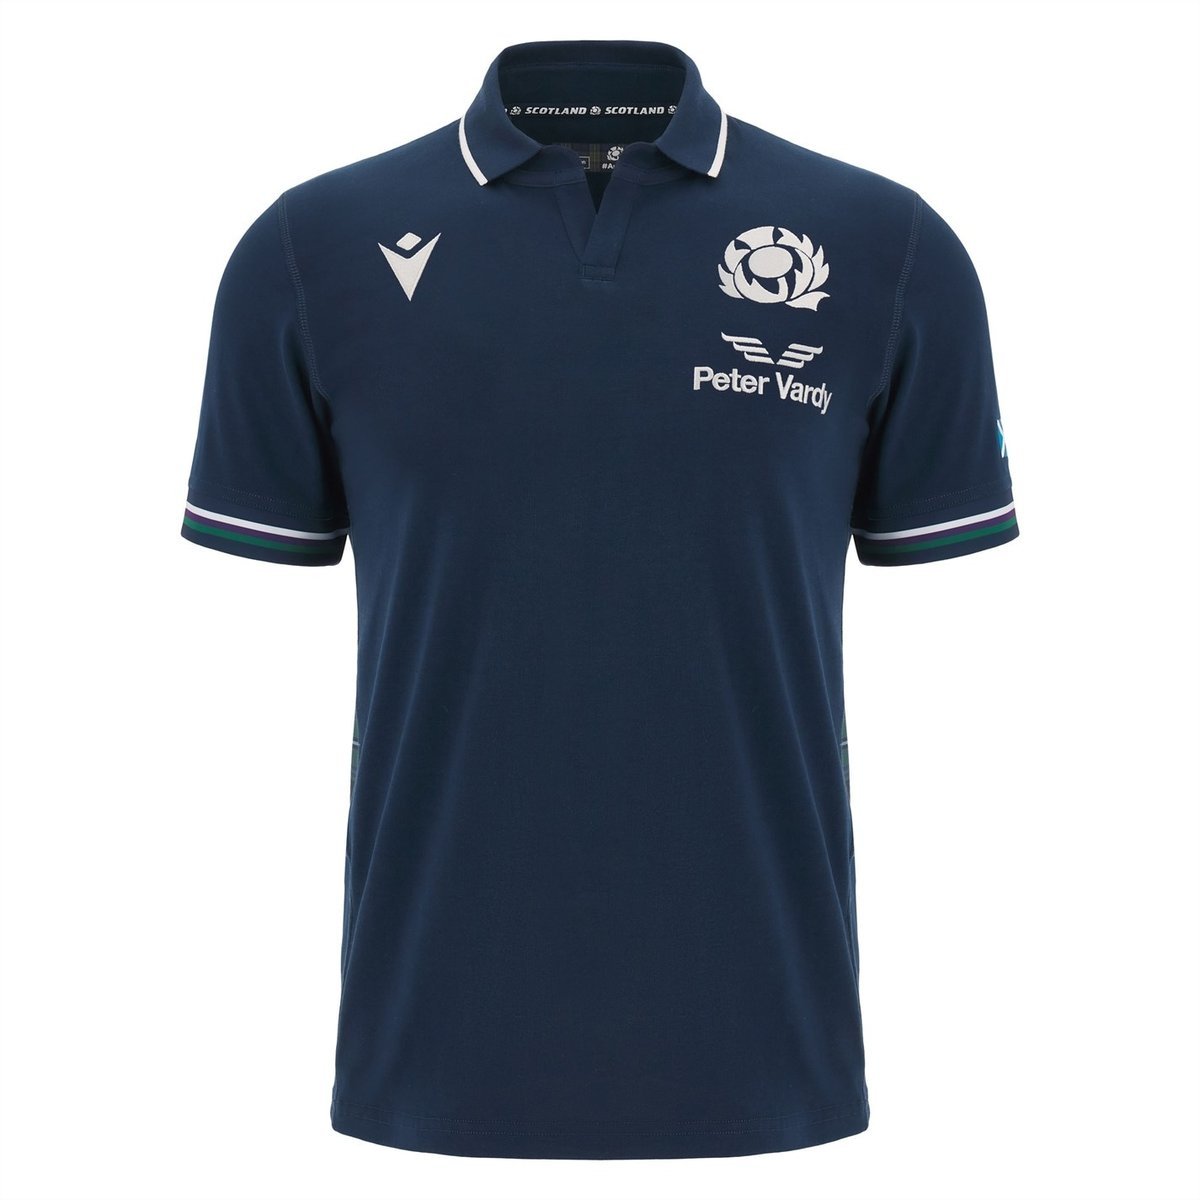 Scotland men's national team World Cup jerseys